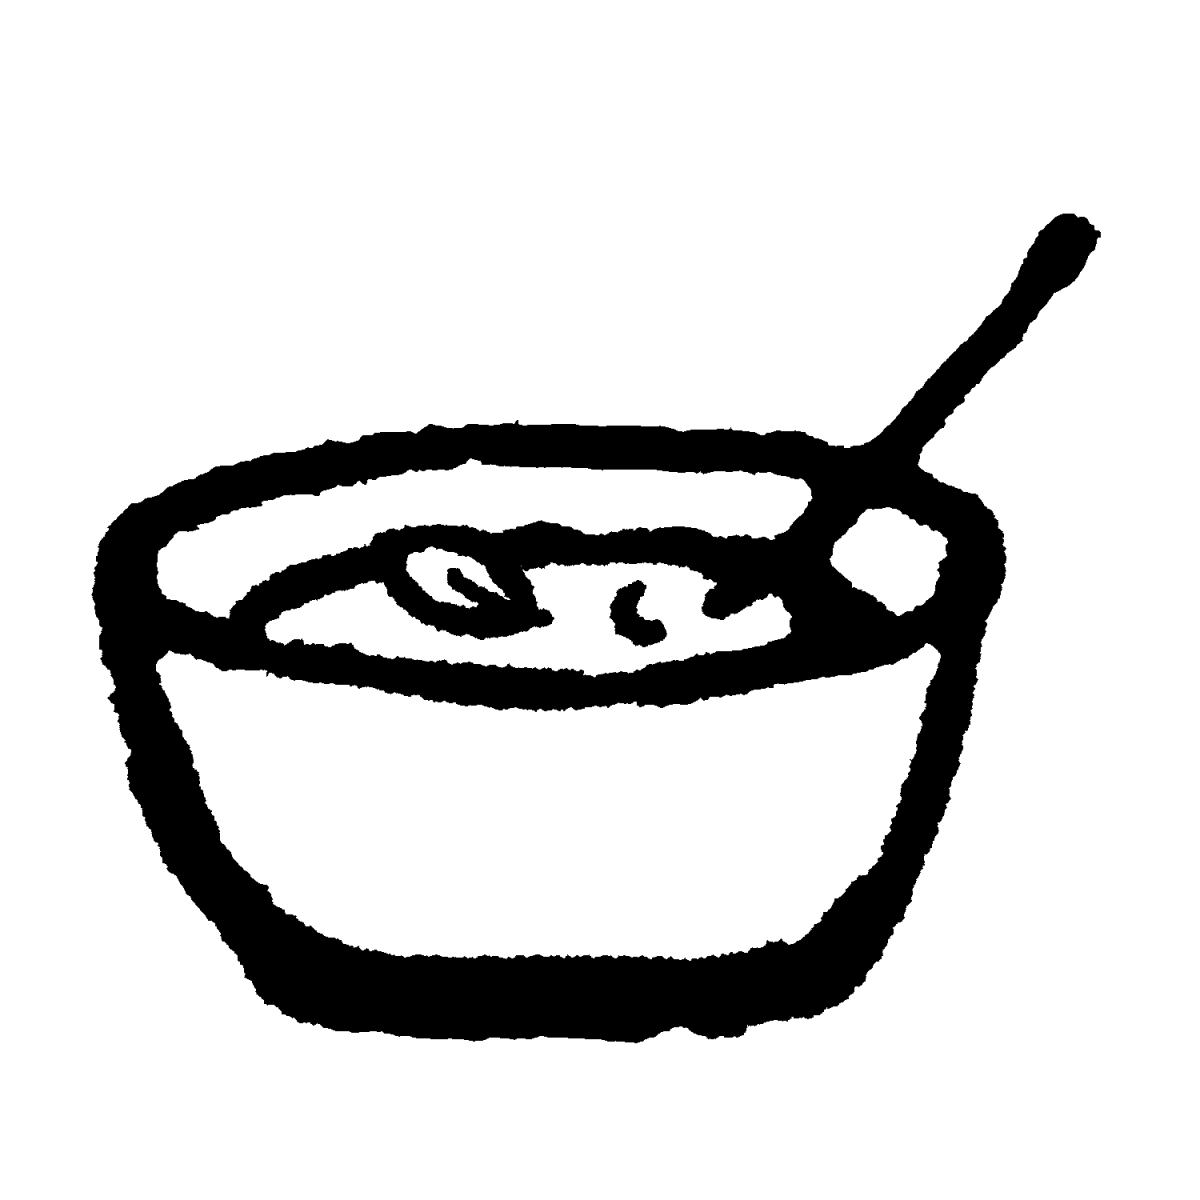 ヨーグルト／汁物（2種）のイラスト / yogurt Illustration